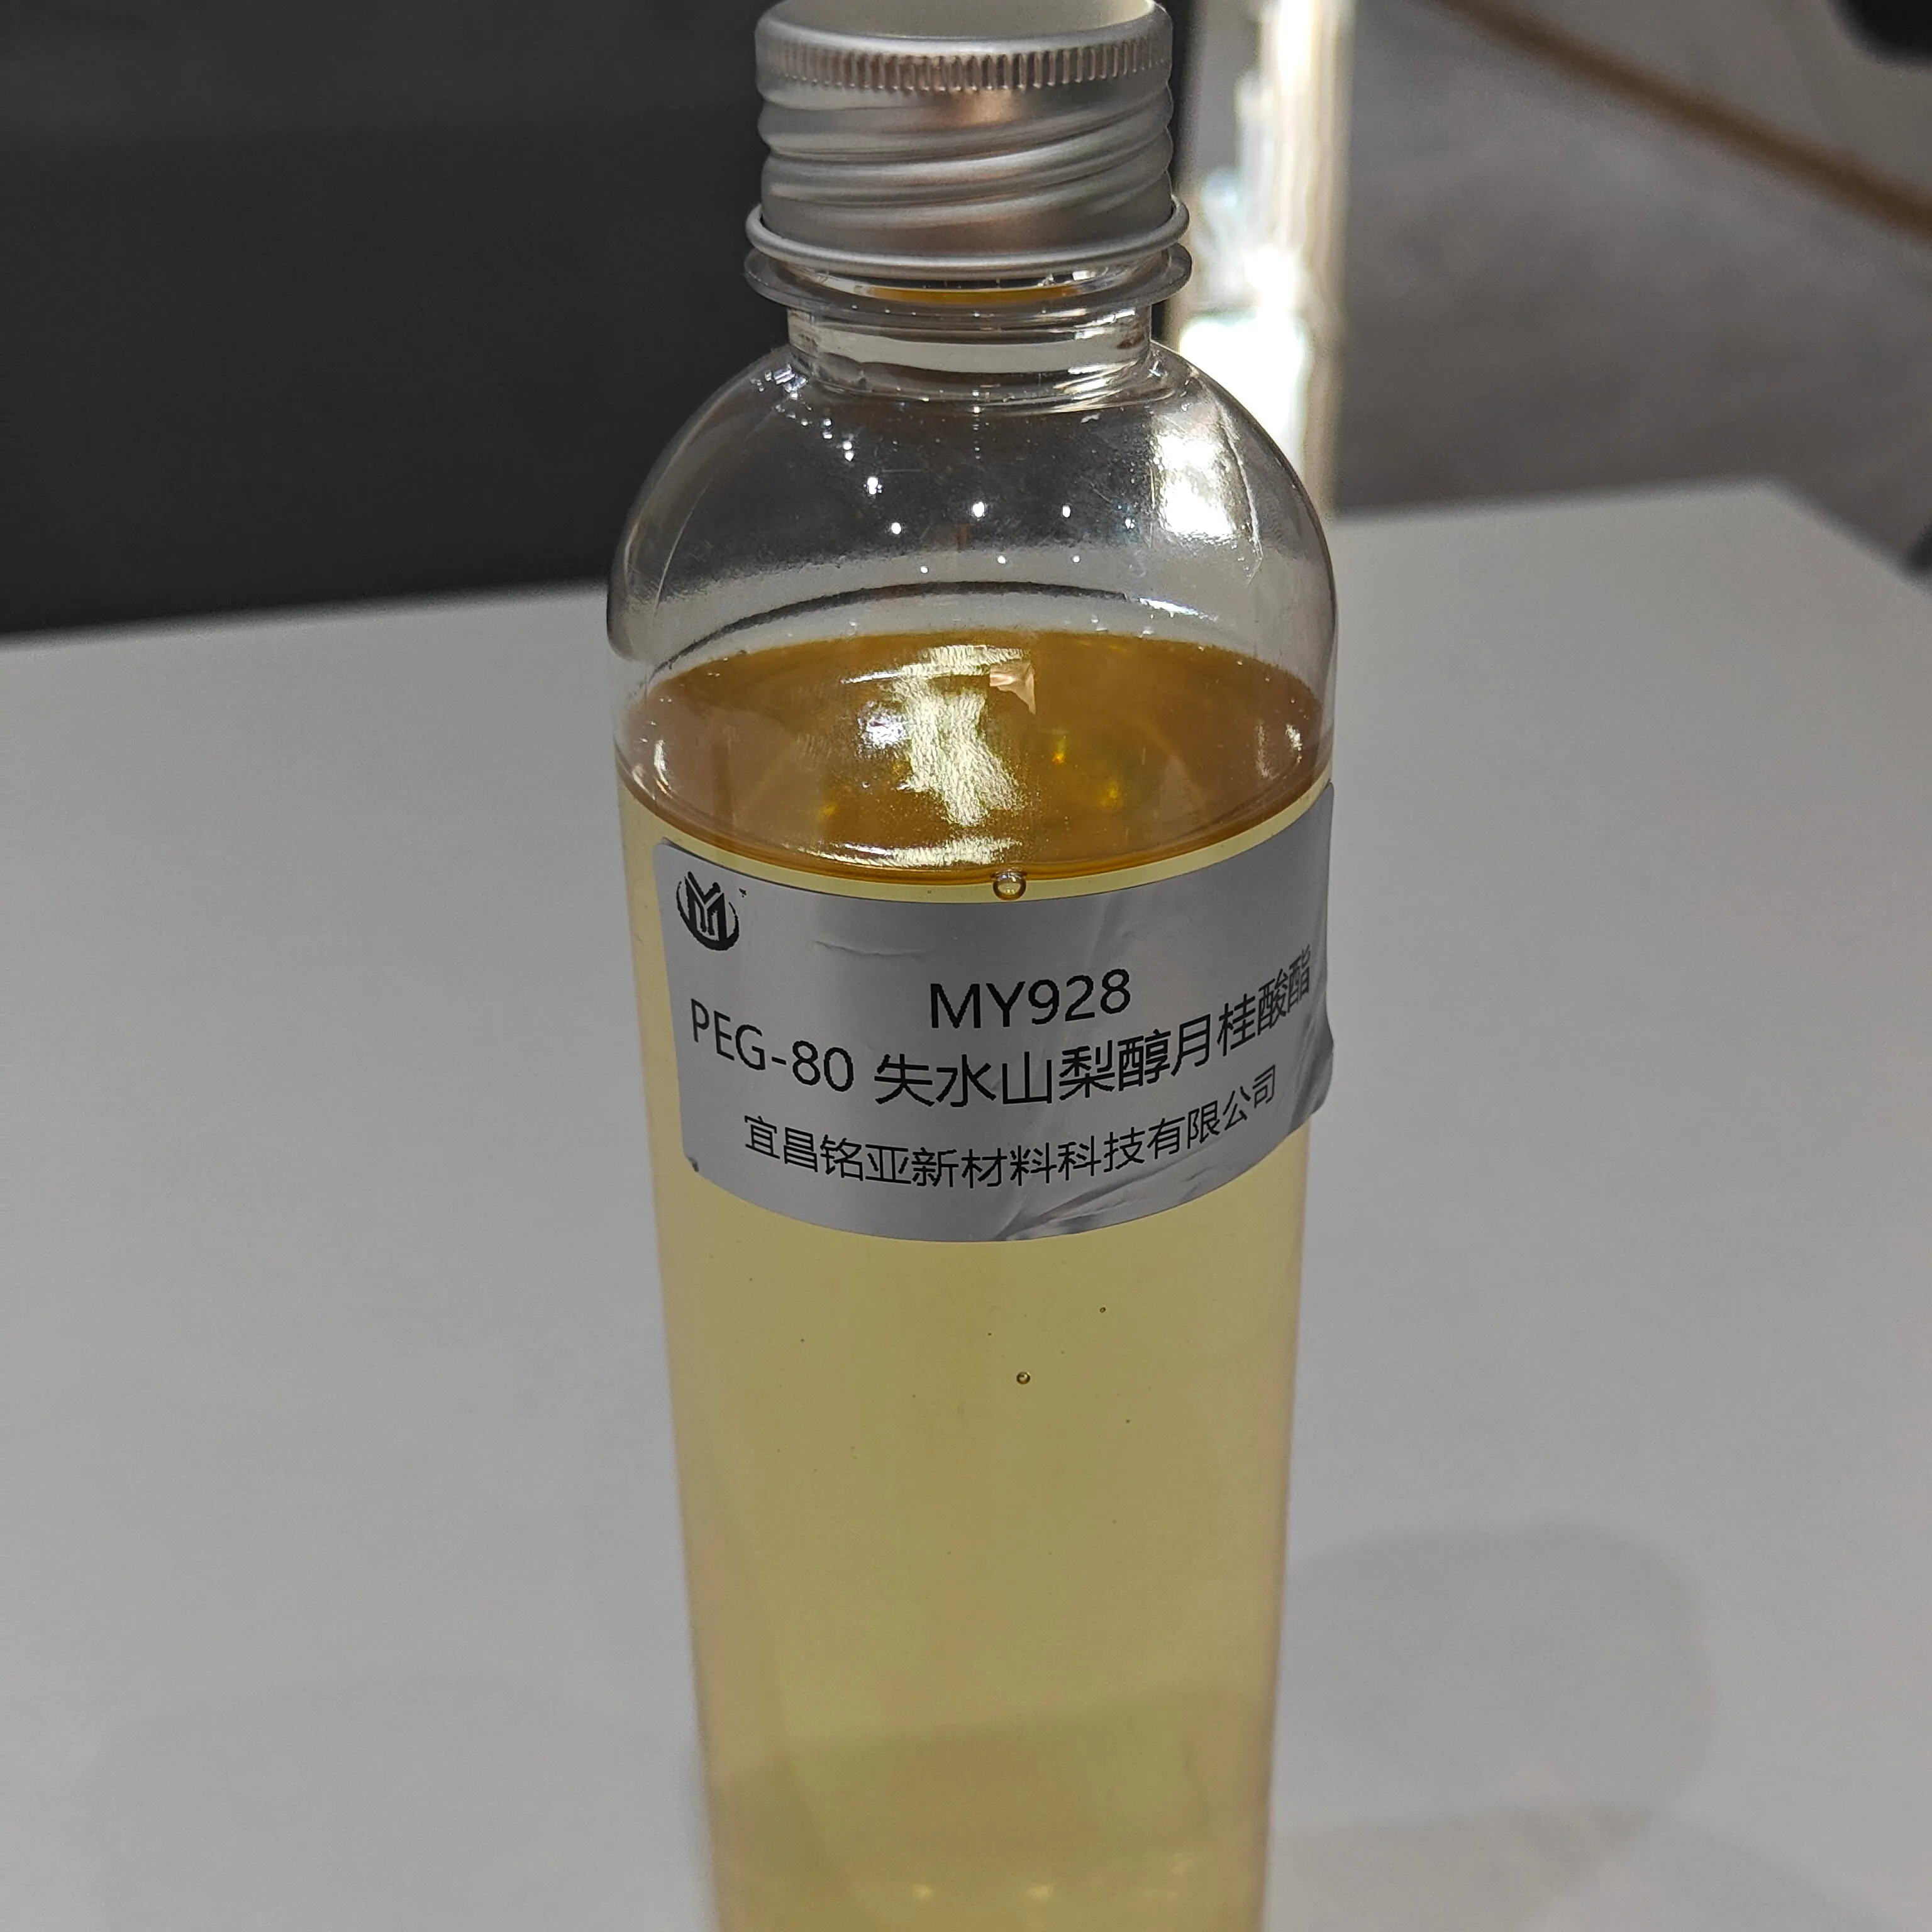 Prodotti chimici materie prime PEG-80 prodotti chimici disidratati sorbitano laurato per la produzione di sapone liquido chimici ragazzi